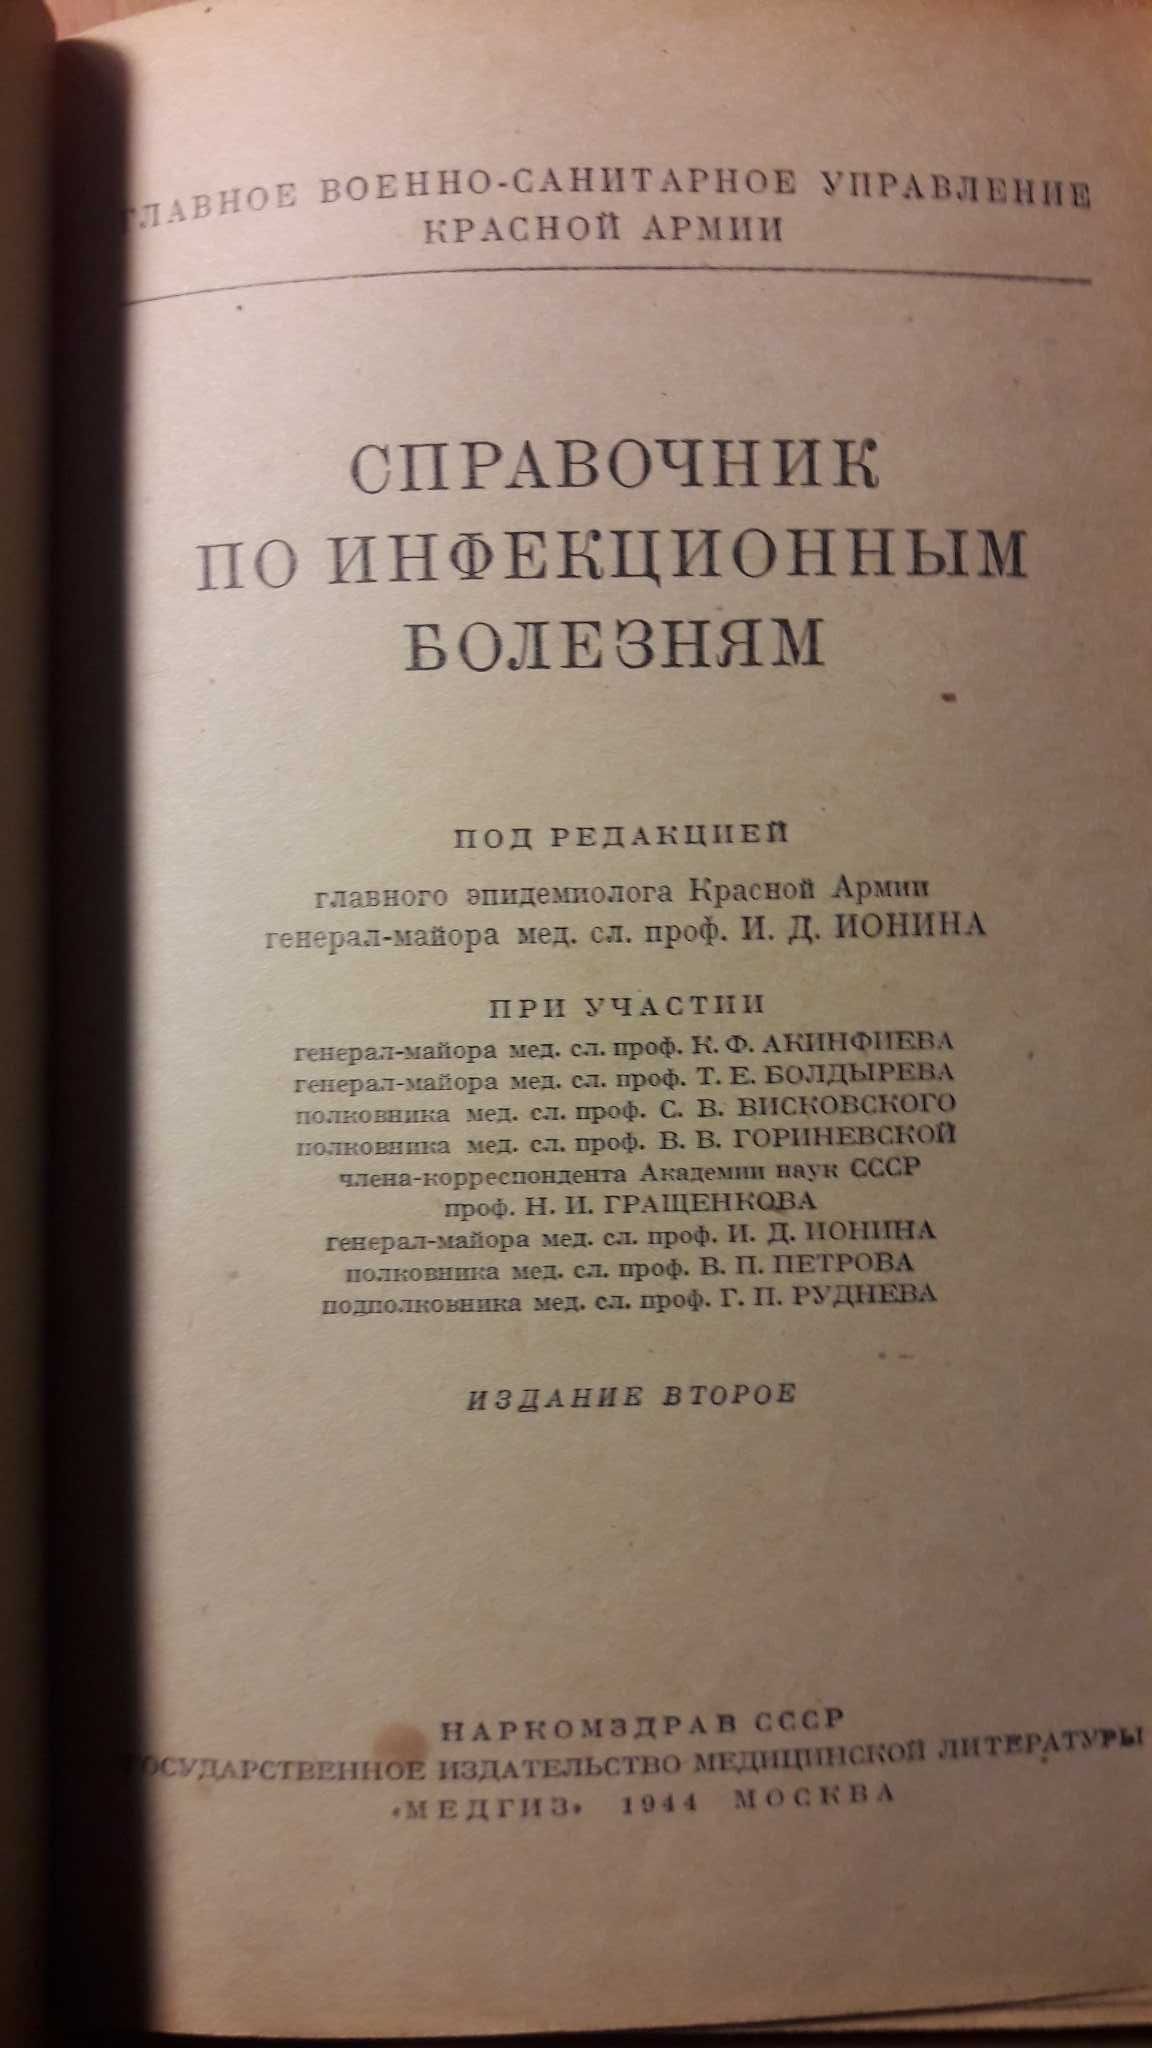 Справочник Наркомздрав ссср, медгиз 1944